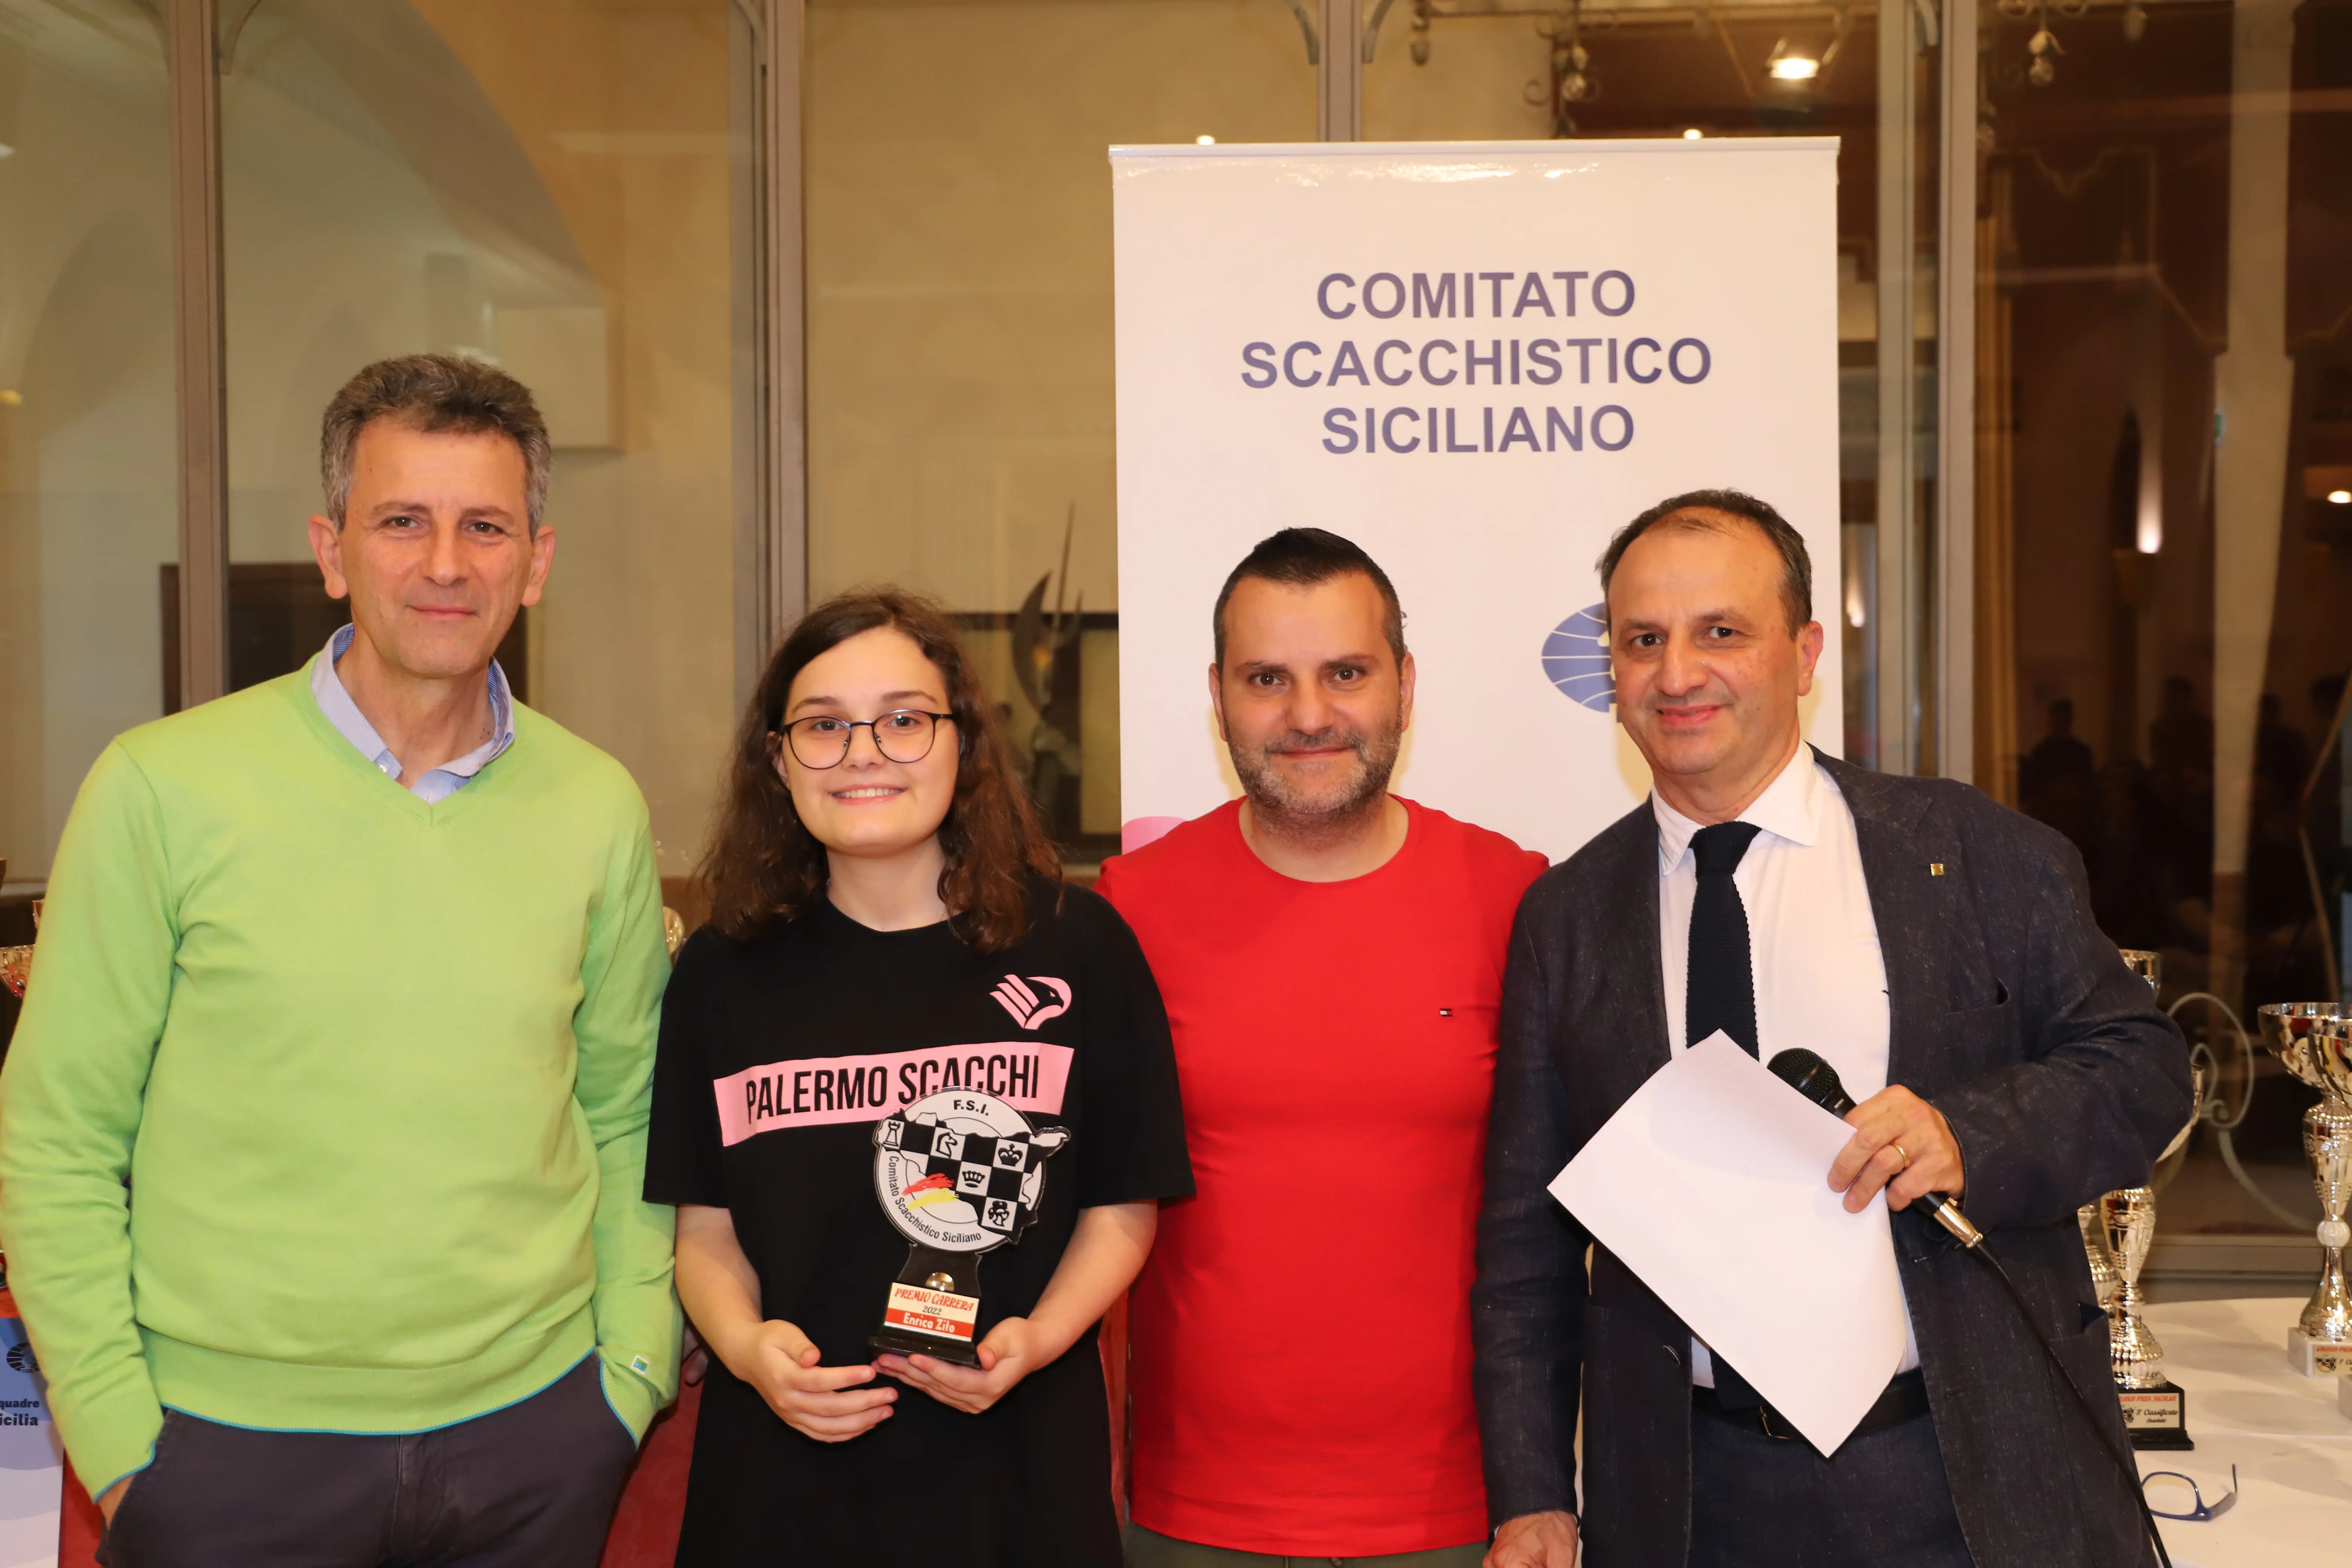 Tornei Scacchi - CIS U18 - 29/10 - 1/11 - Petrosino (Trapani) - CIS 2023